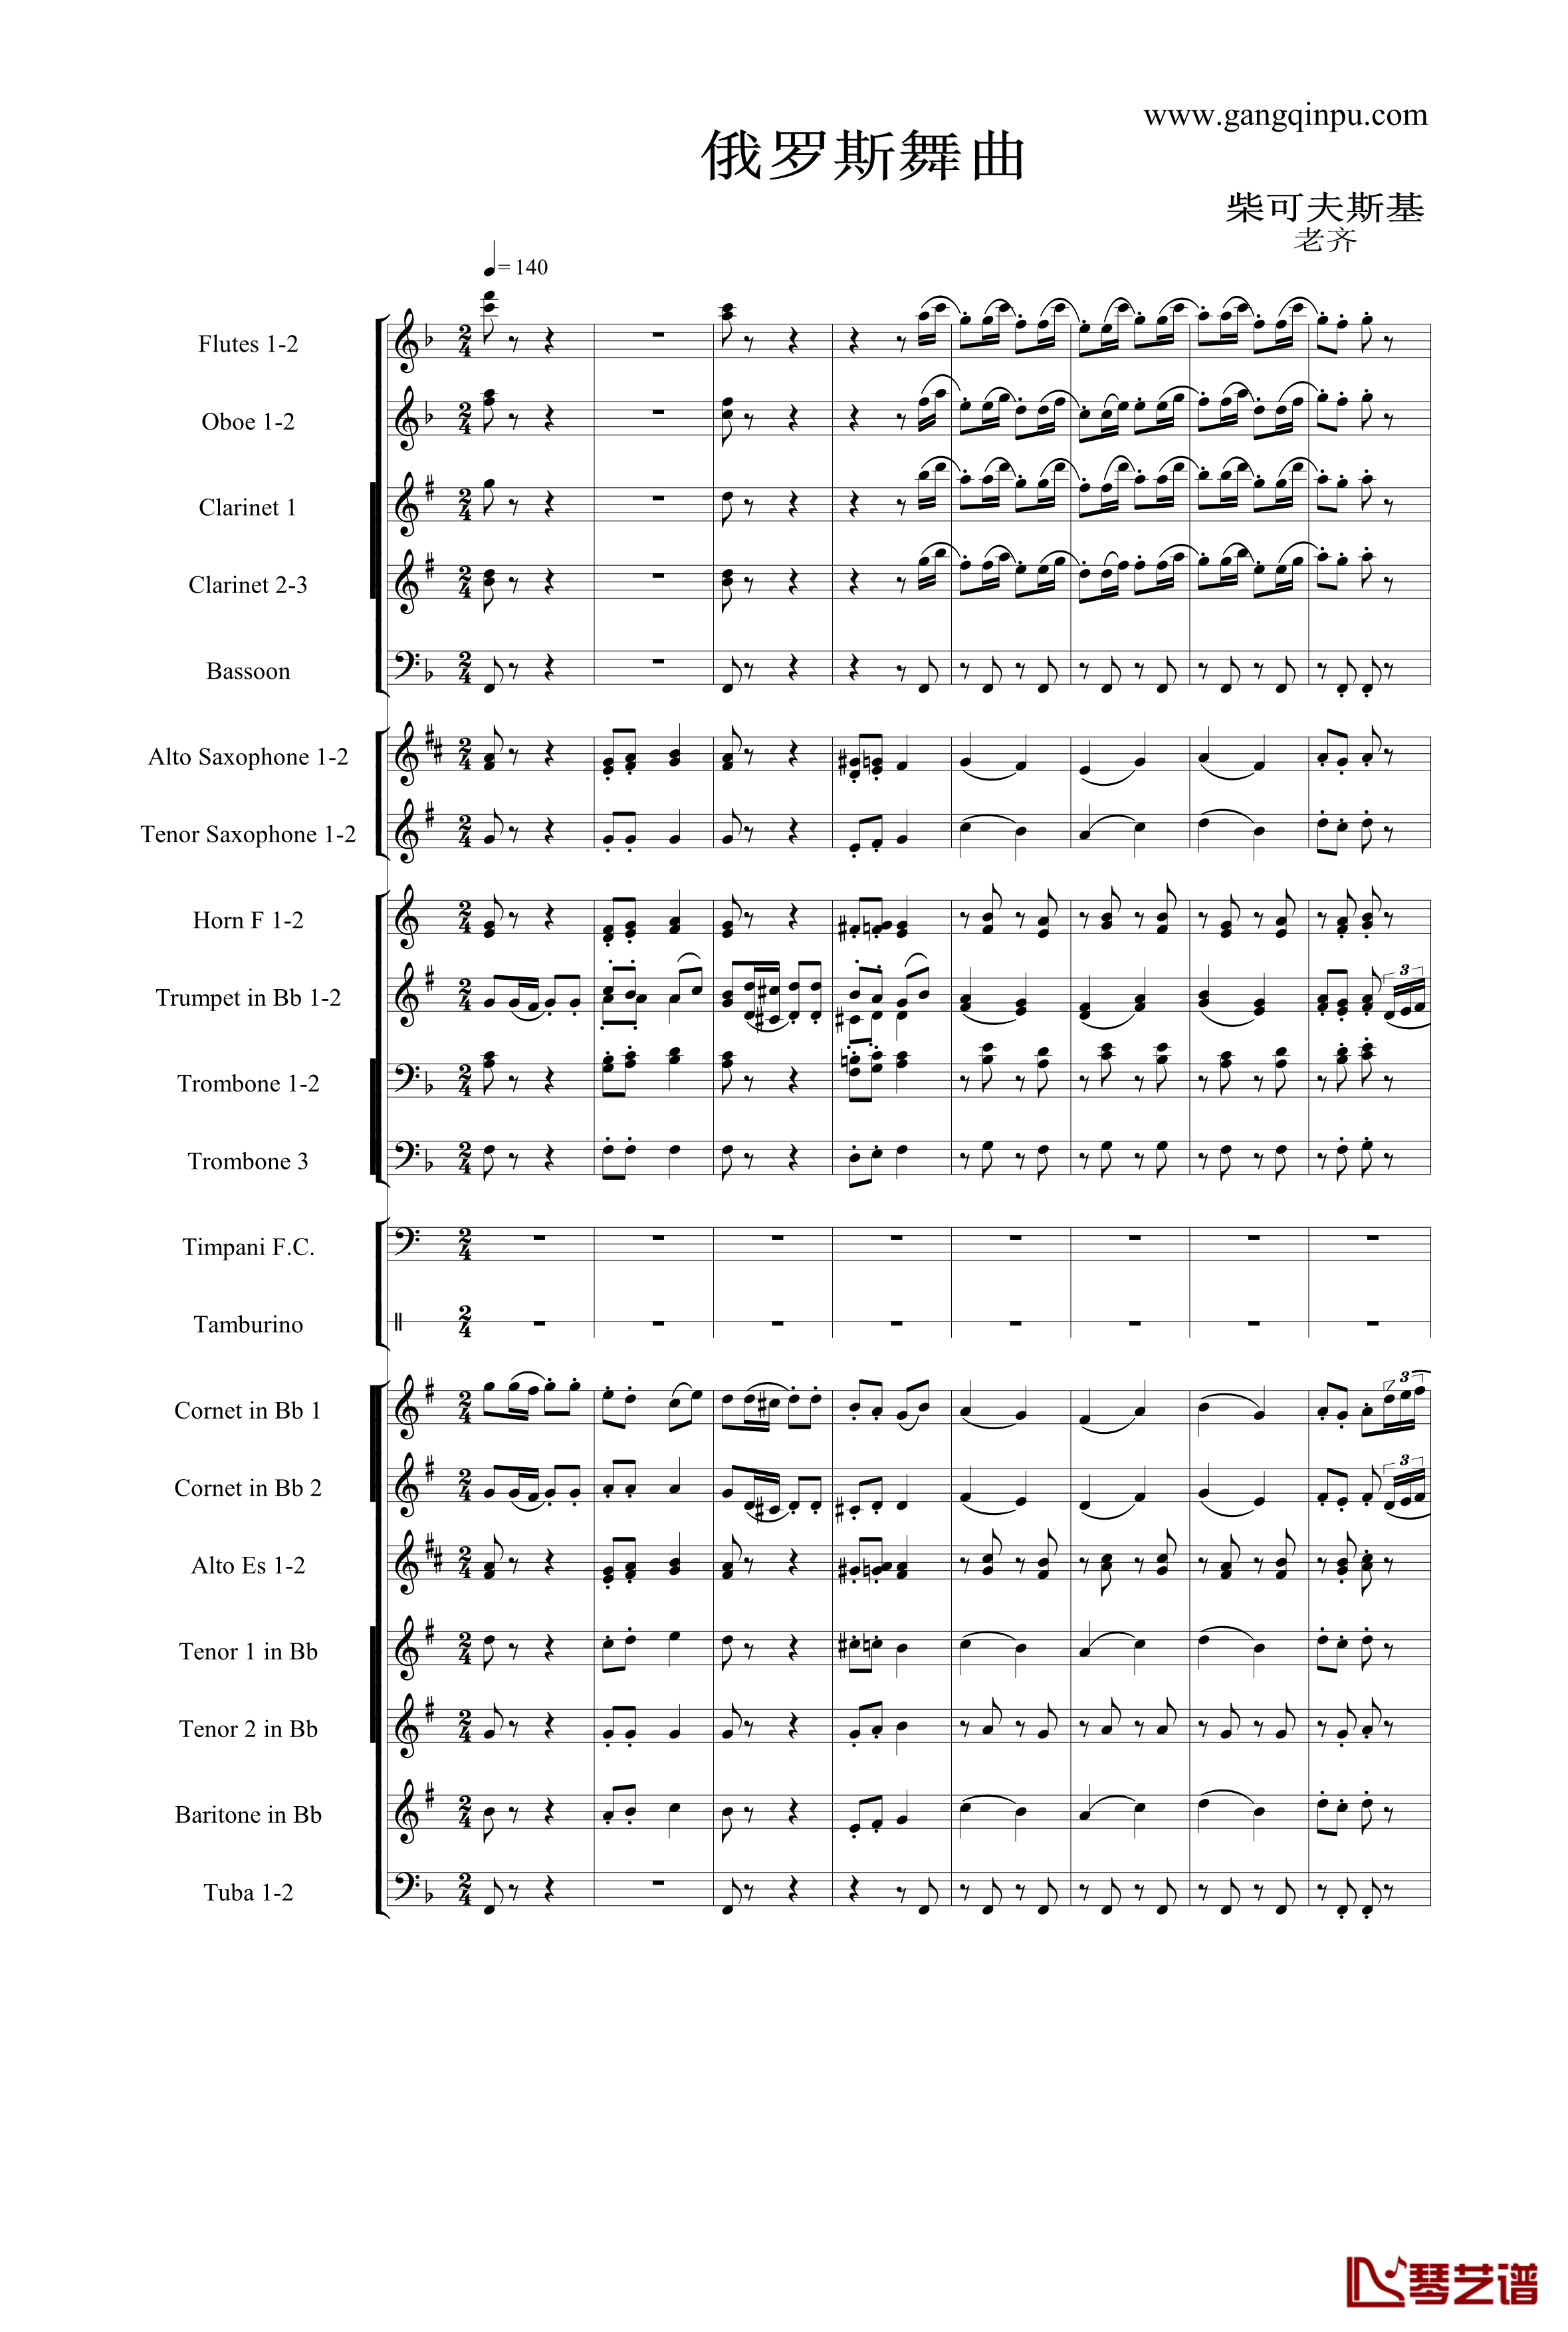 俄罗斯舞曲钢琴谱-铜管乐队-柴科夫斯基-Peter Ilyich Tchaikovsky1